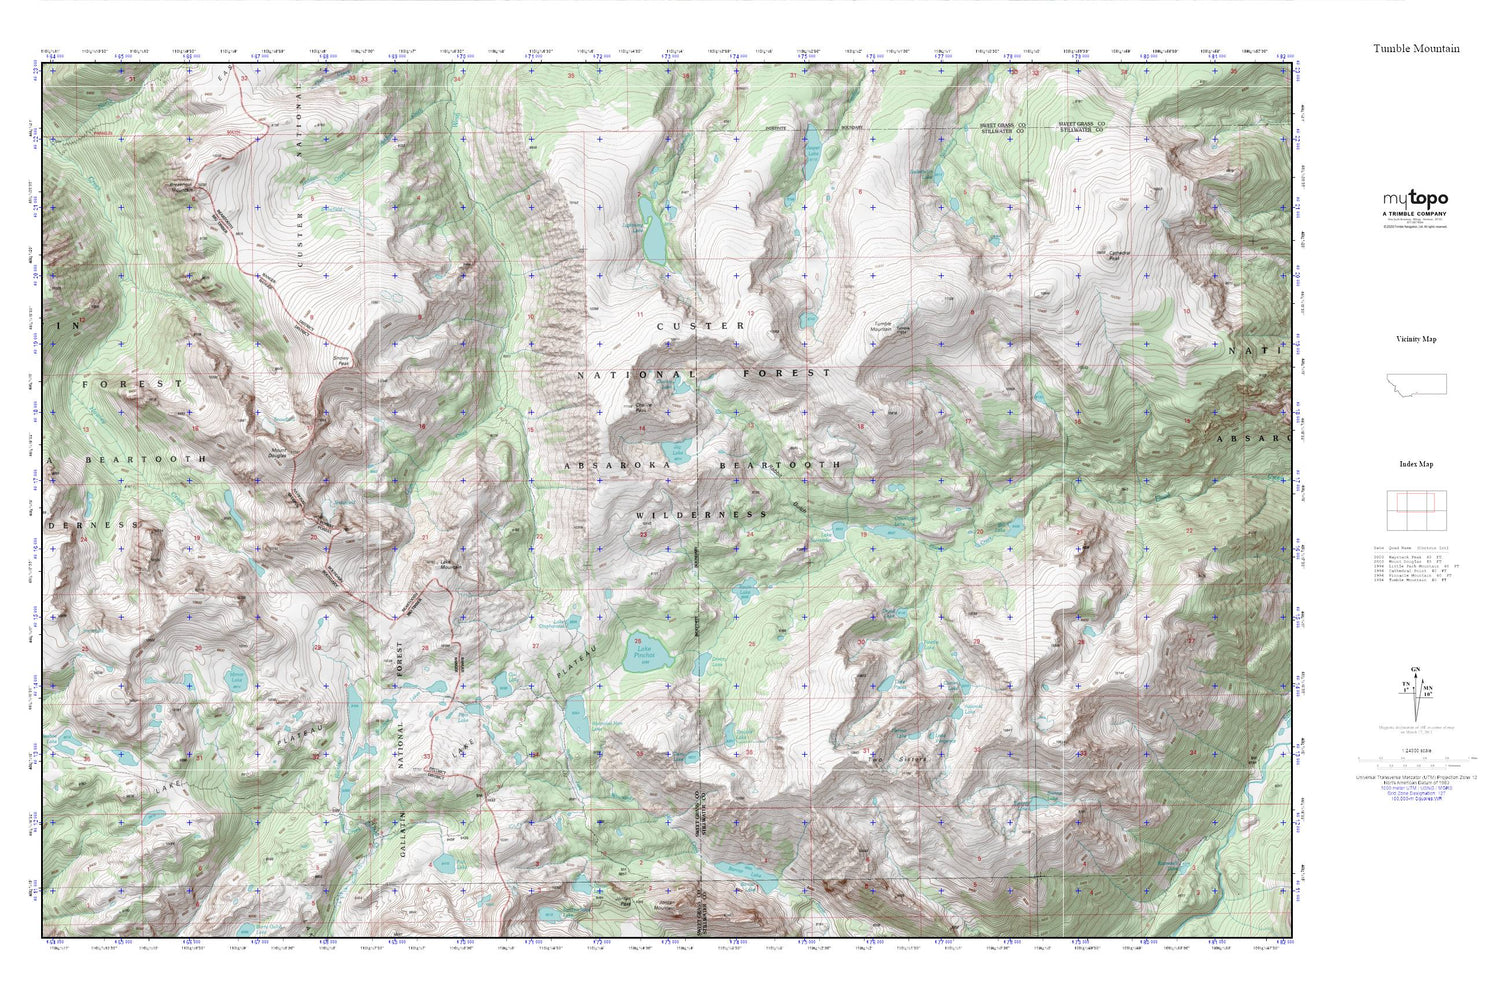 Tumble Mountain MyTopo Explorer Series Map Image